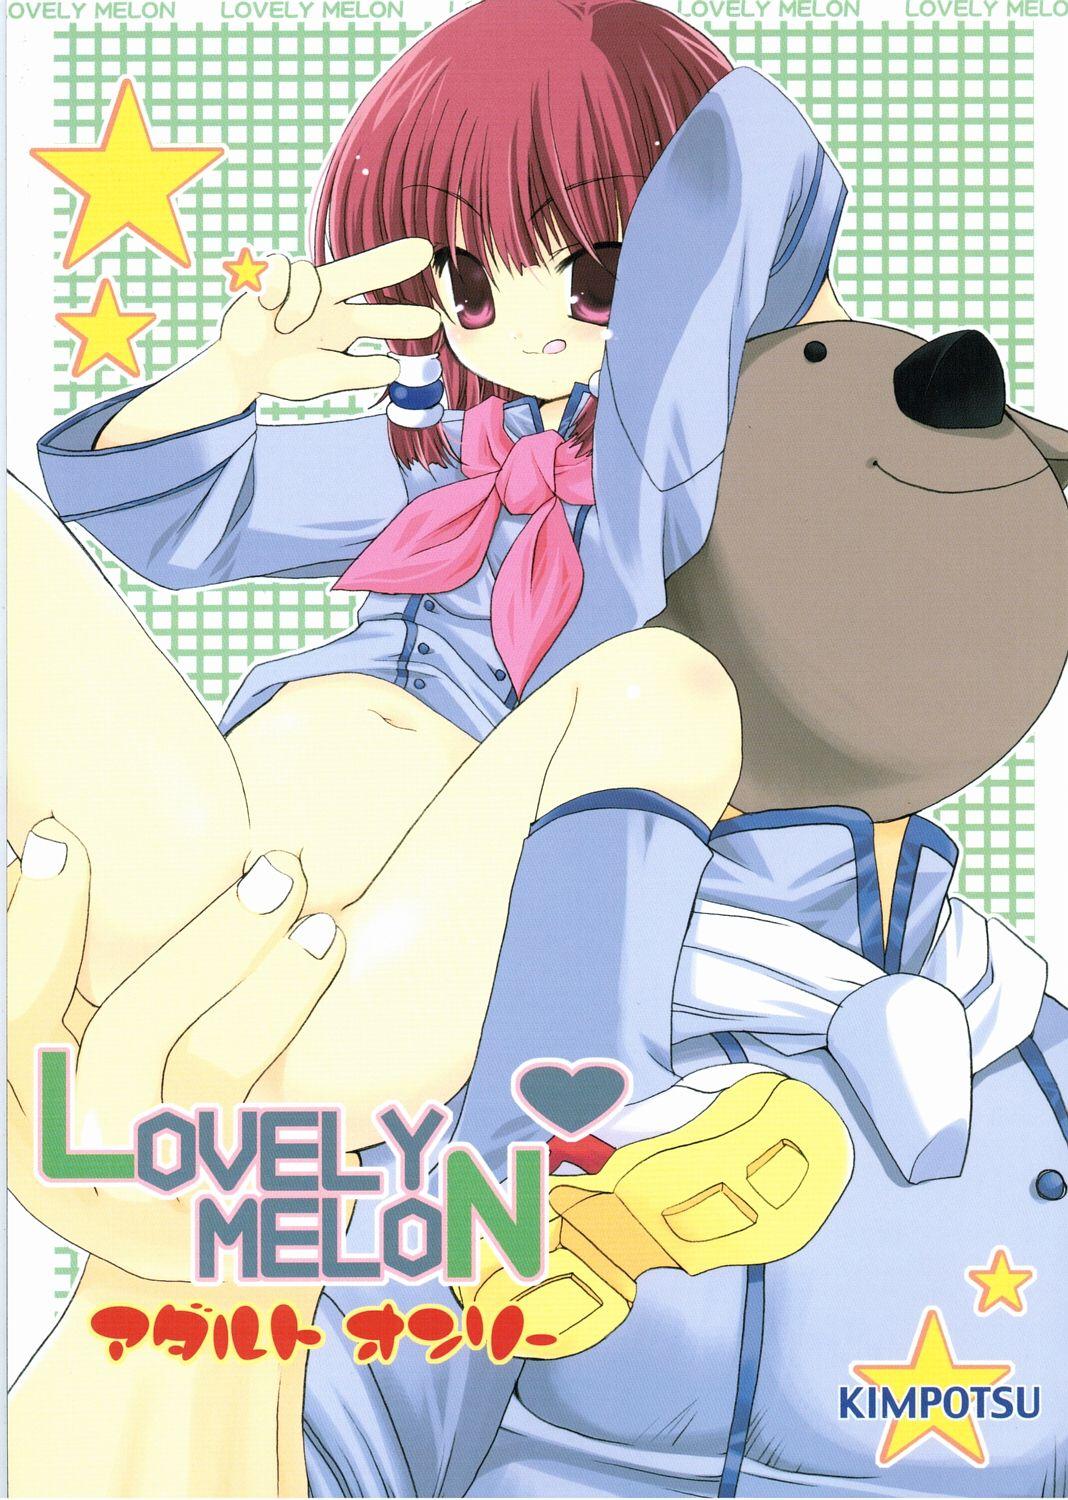 LOVELY MELON 0